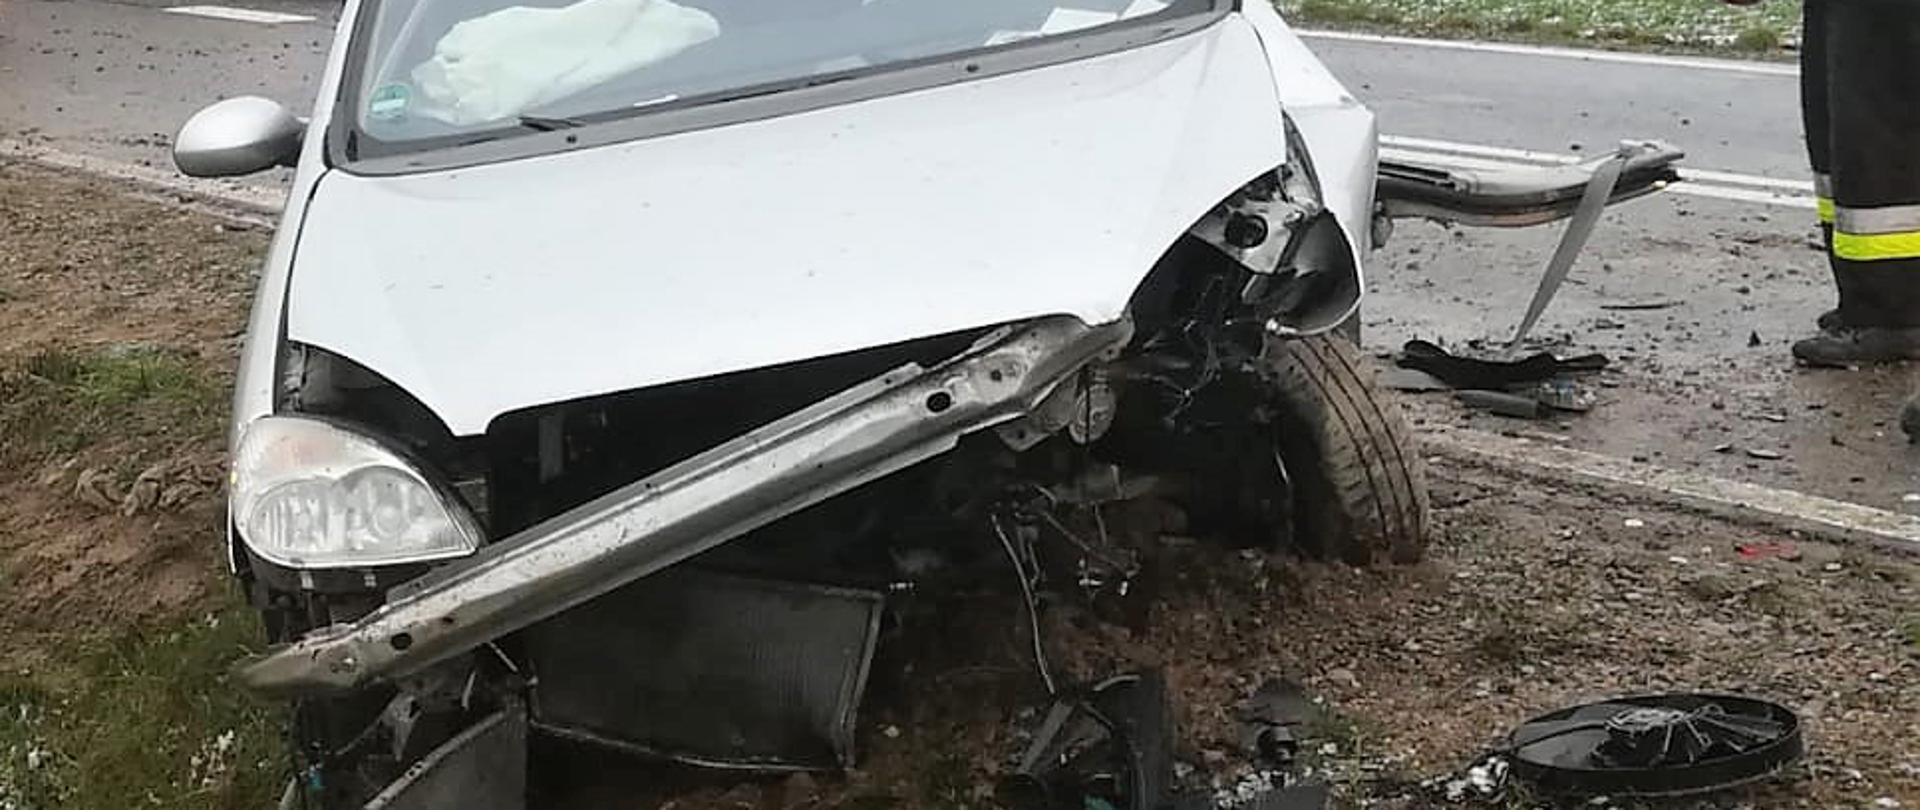 Wypadek samochodu osobowego w miejscowości Rzęgnowo